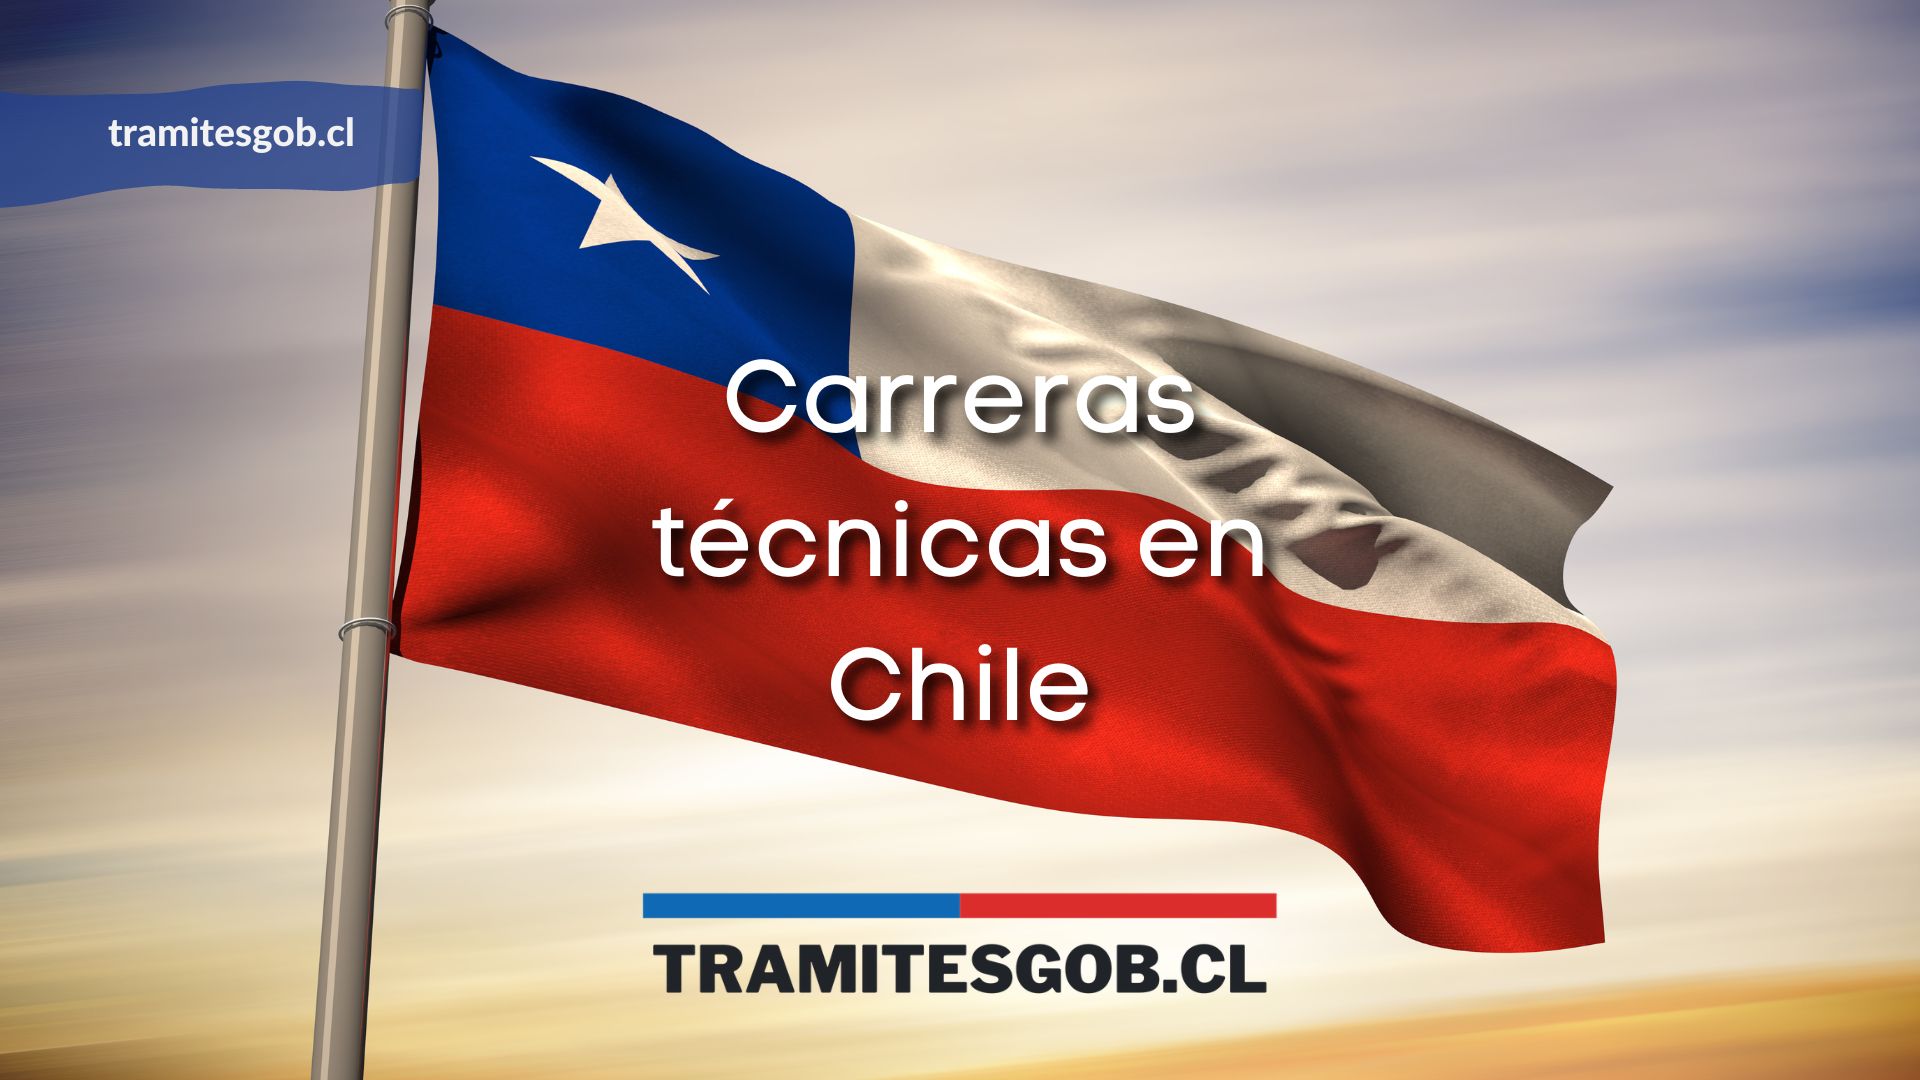 Carreras técnicas en Chile